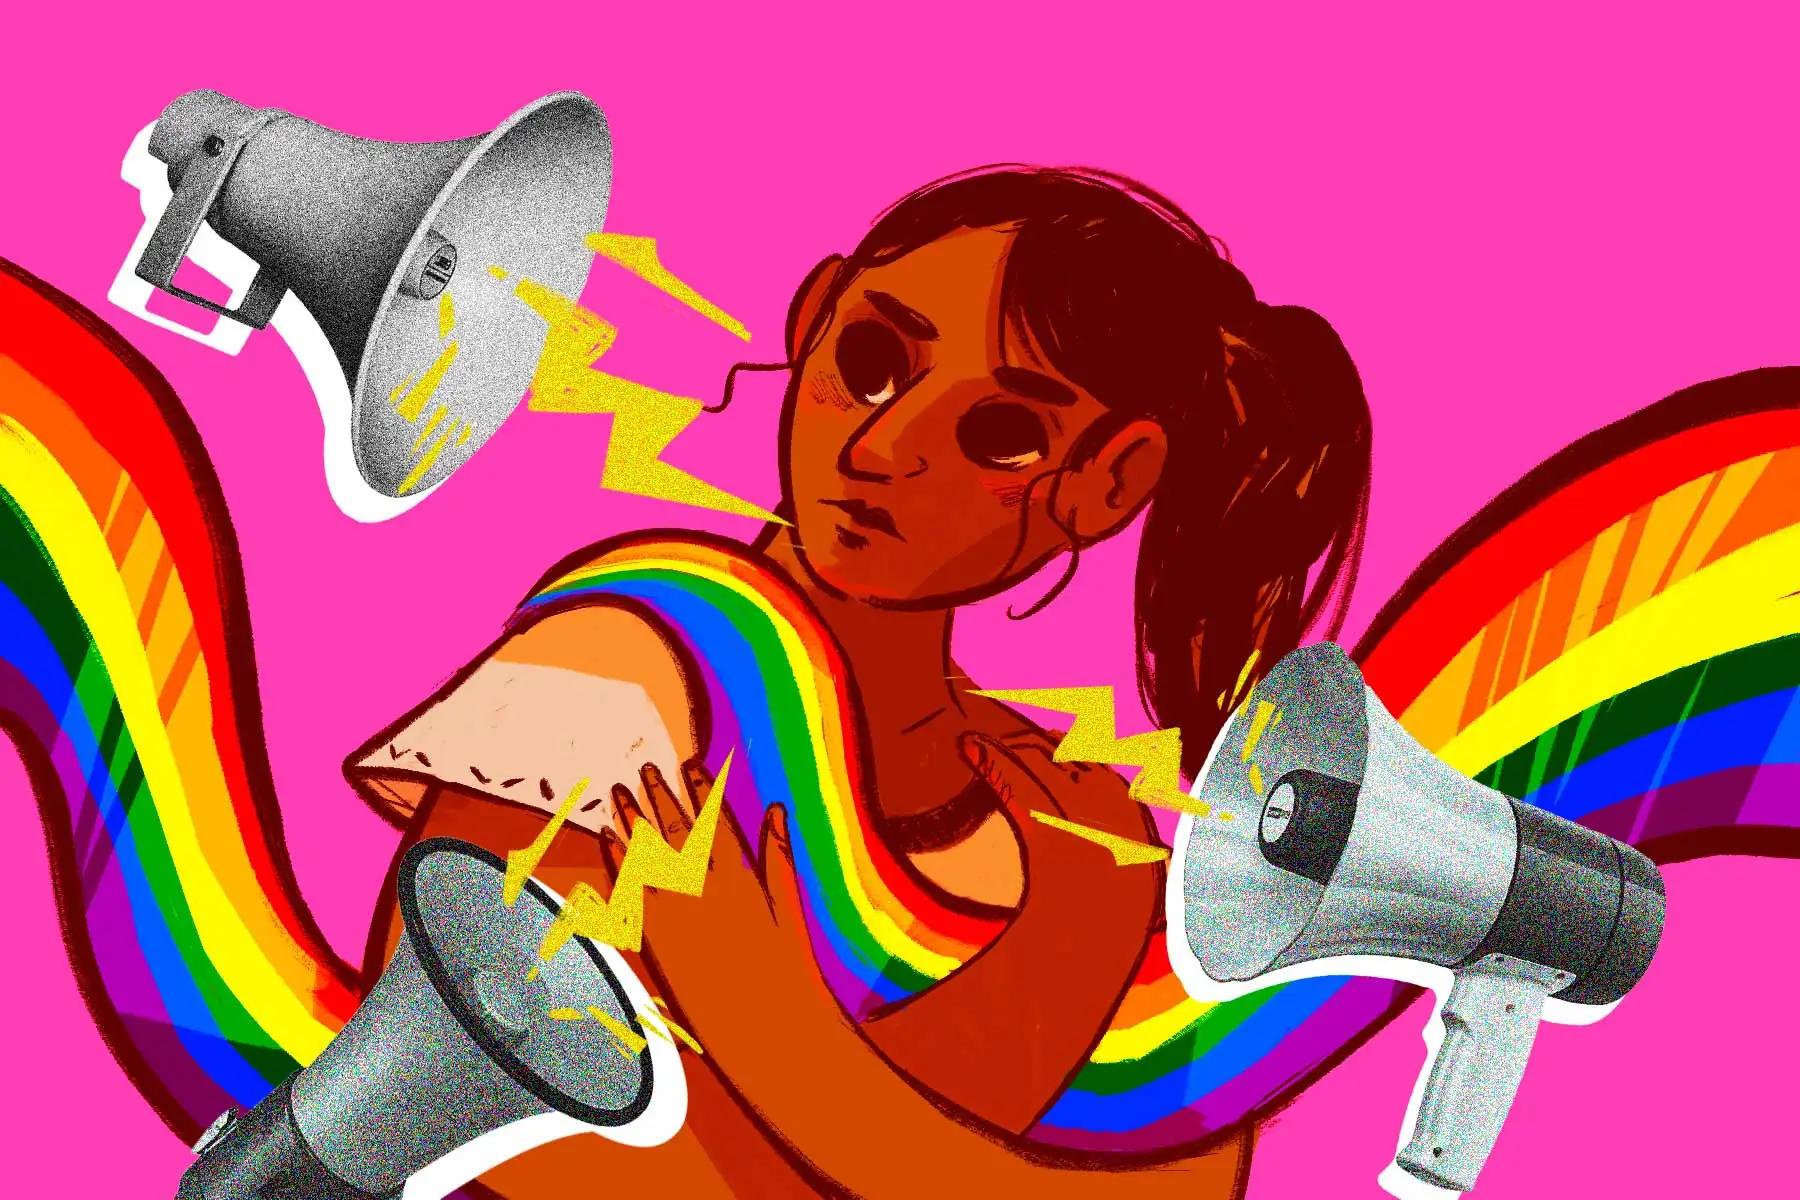 Organizaciones realizan campañas en internet y en el mundo offline para promover narrativas anti-LGBTQ+